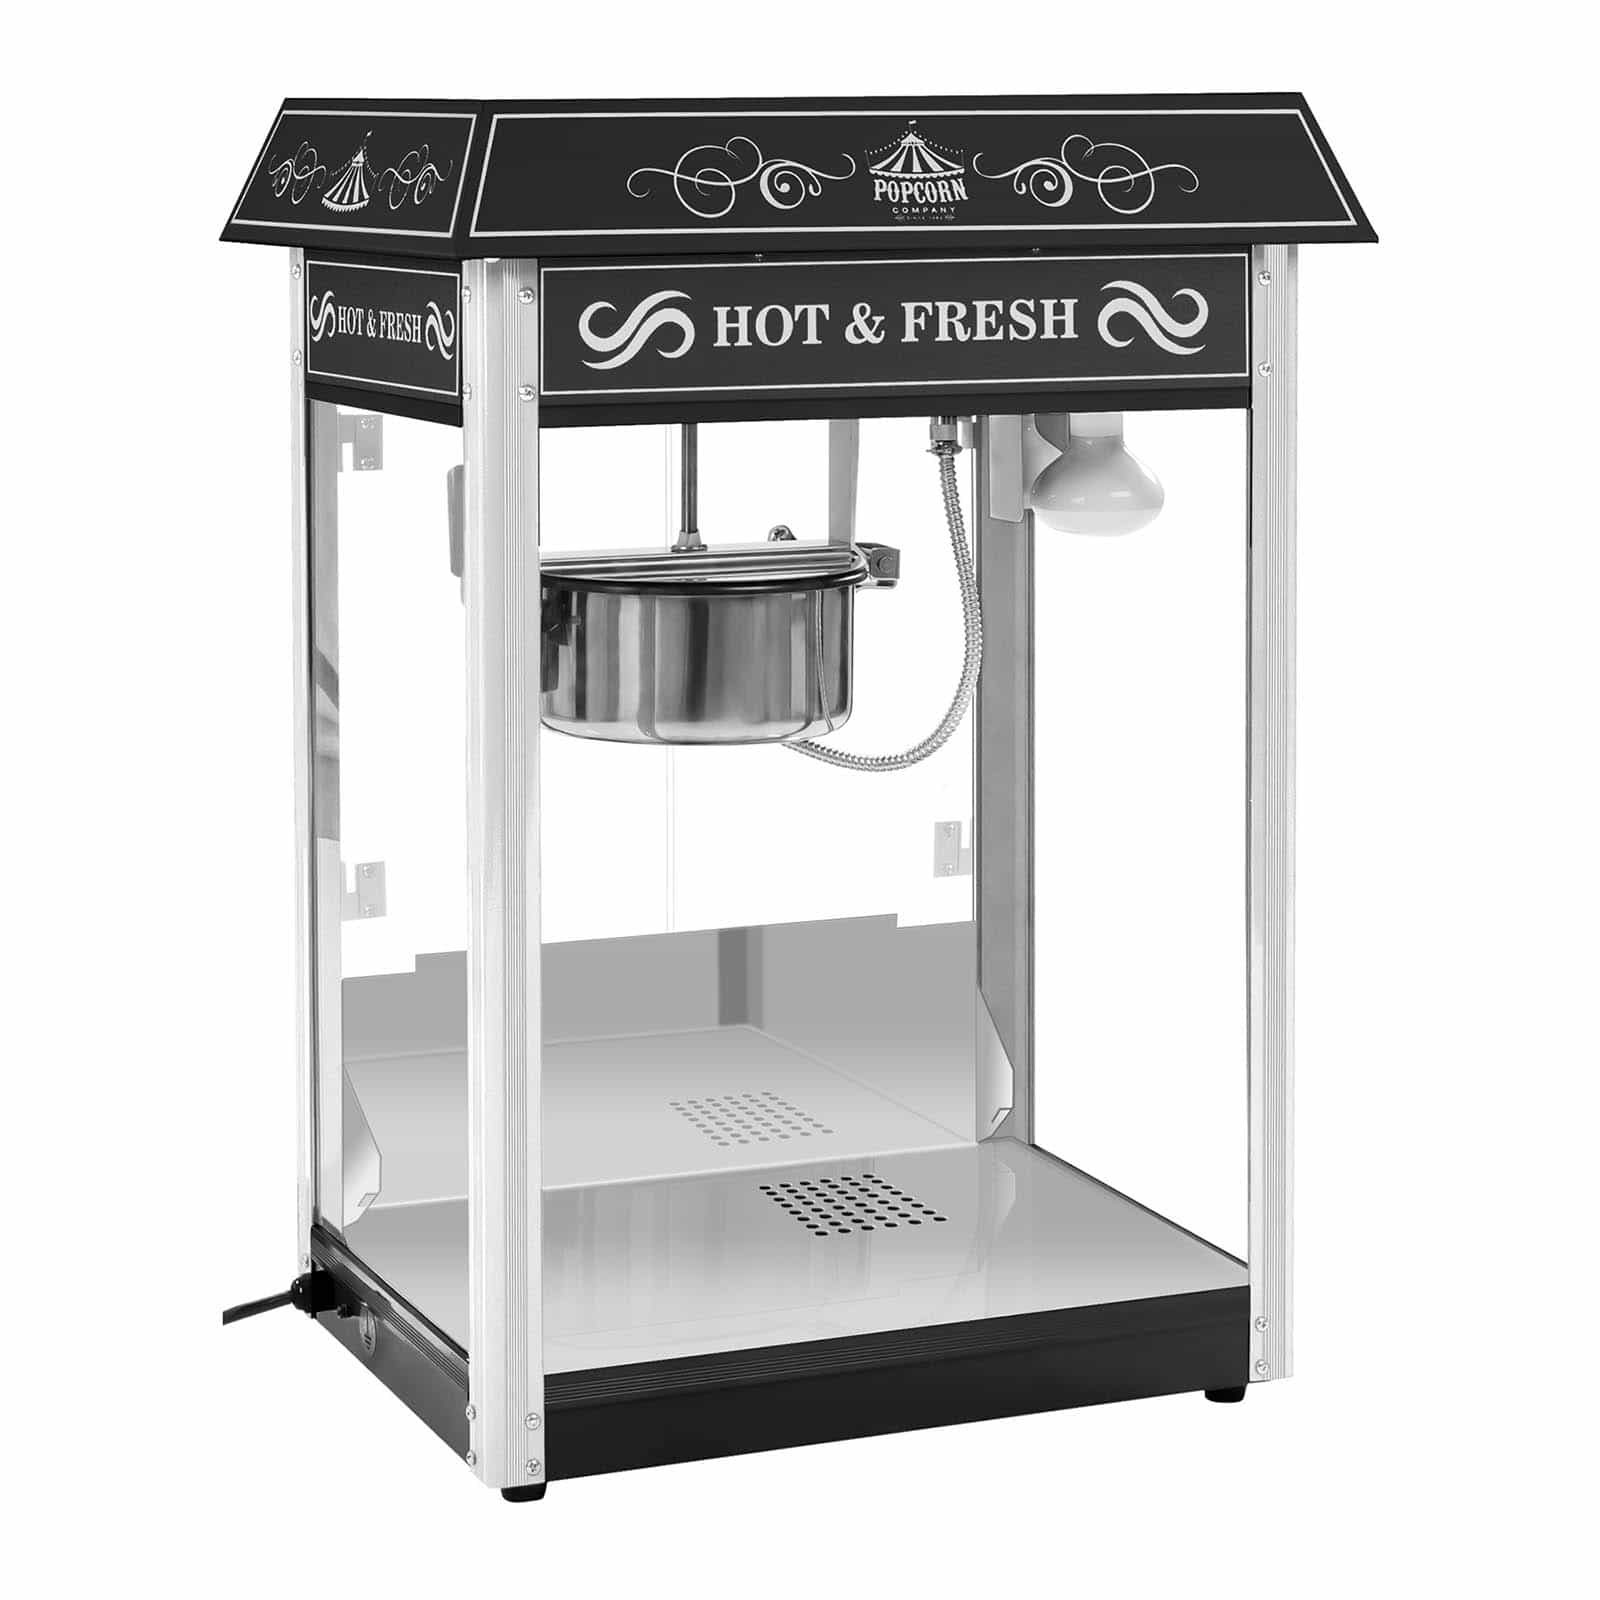 Stroj na popcorn černý americký design - Stroje na popcorn Royal Catering